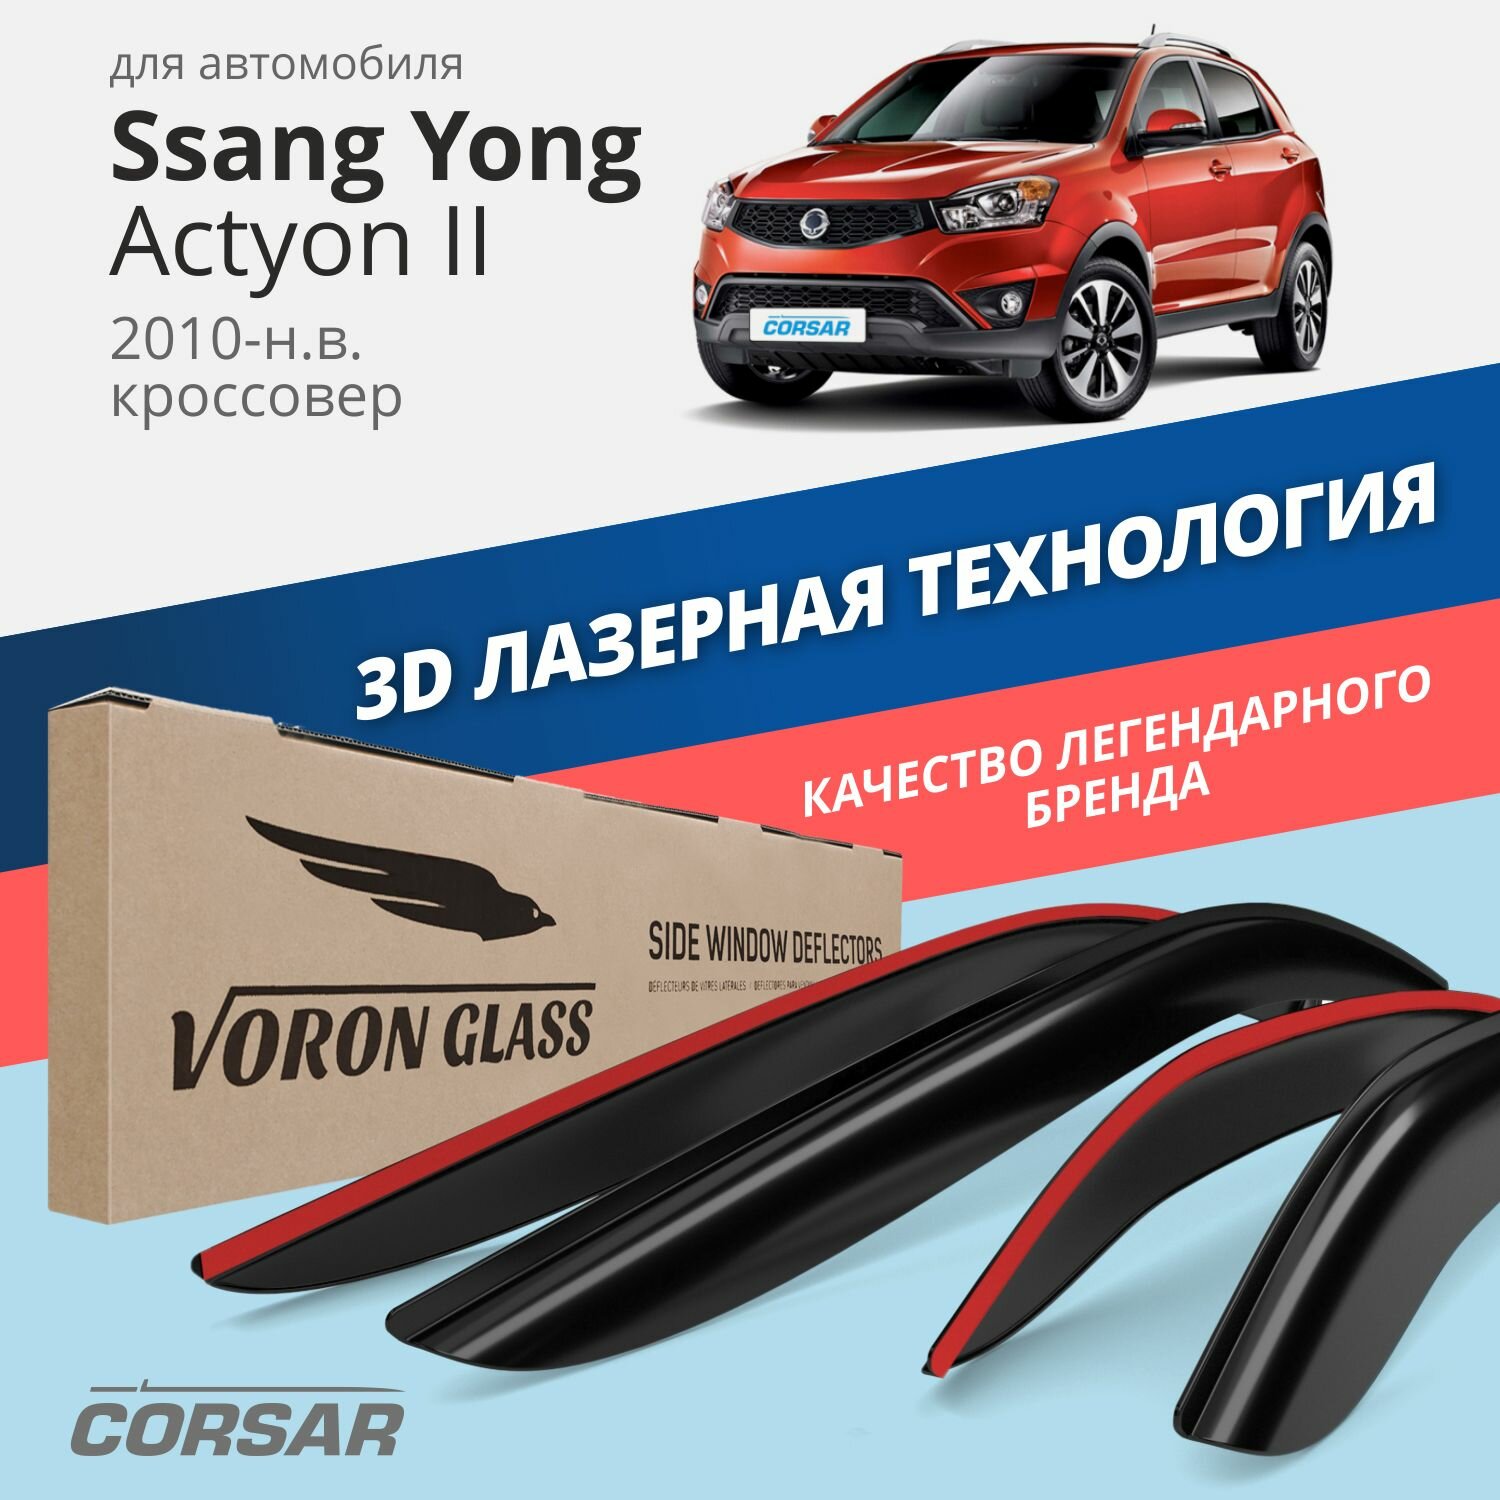 Дефлекторы окон Voron Glass серия Corsar для Ssang Yong Actyon II 2010-н. в. накладные 4 шт.